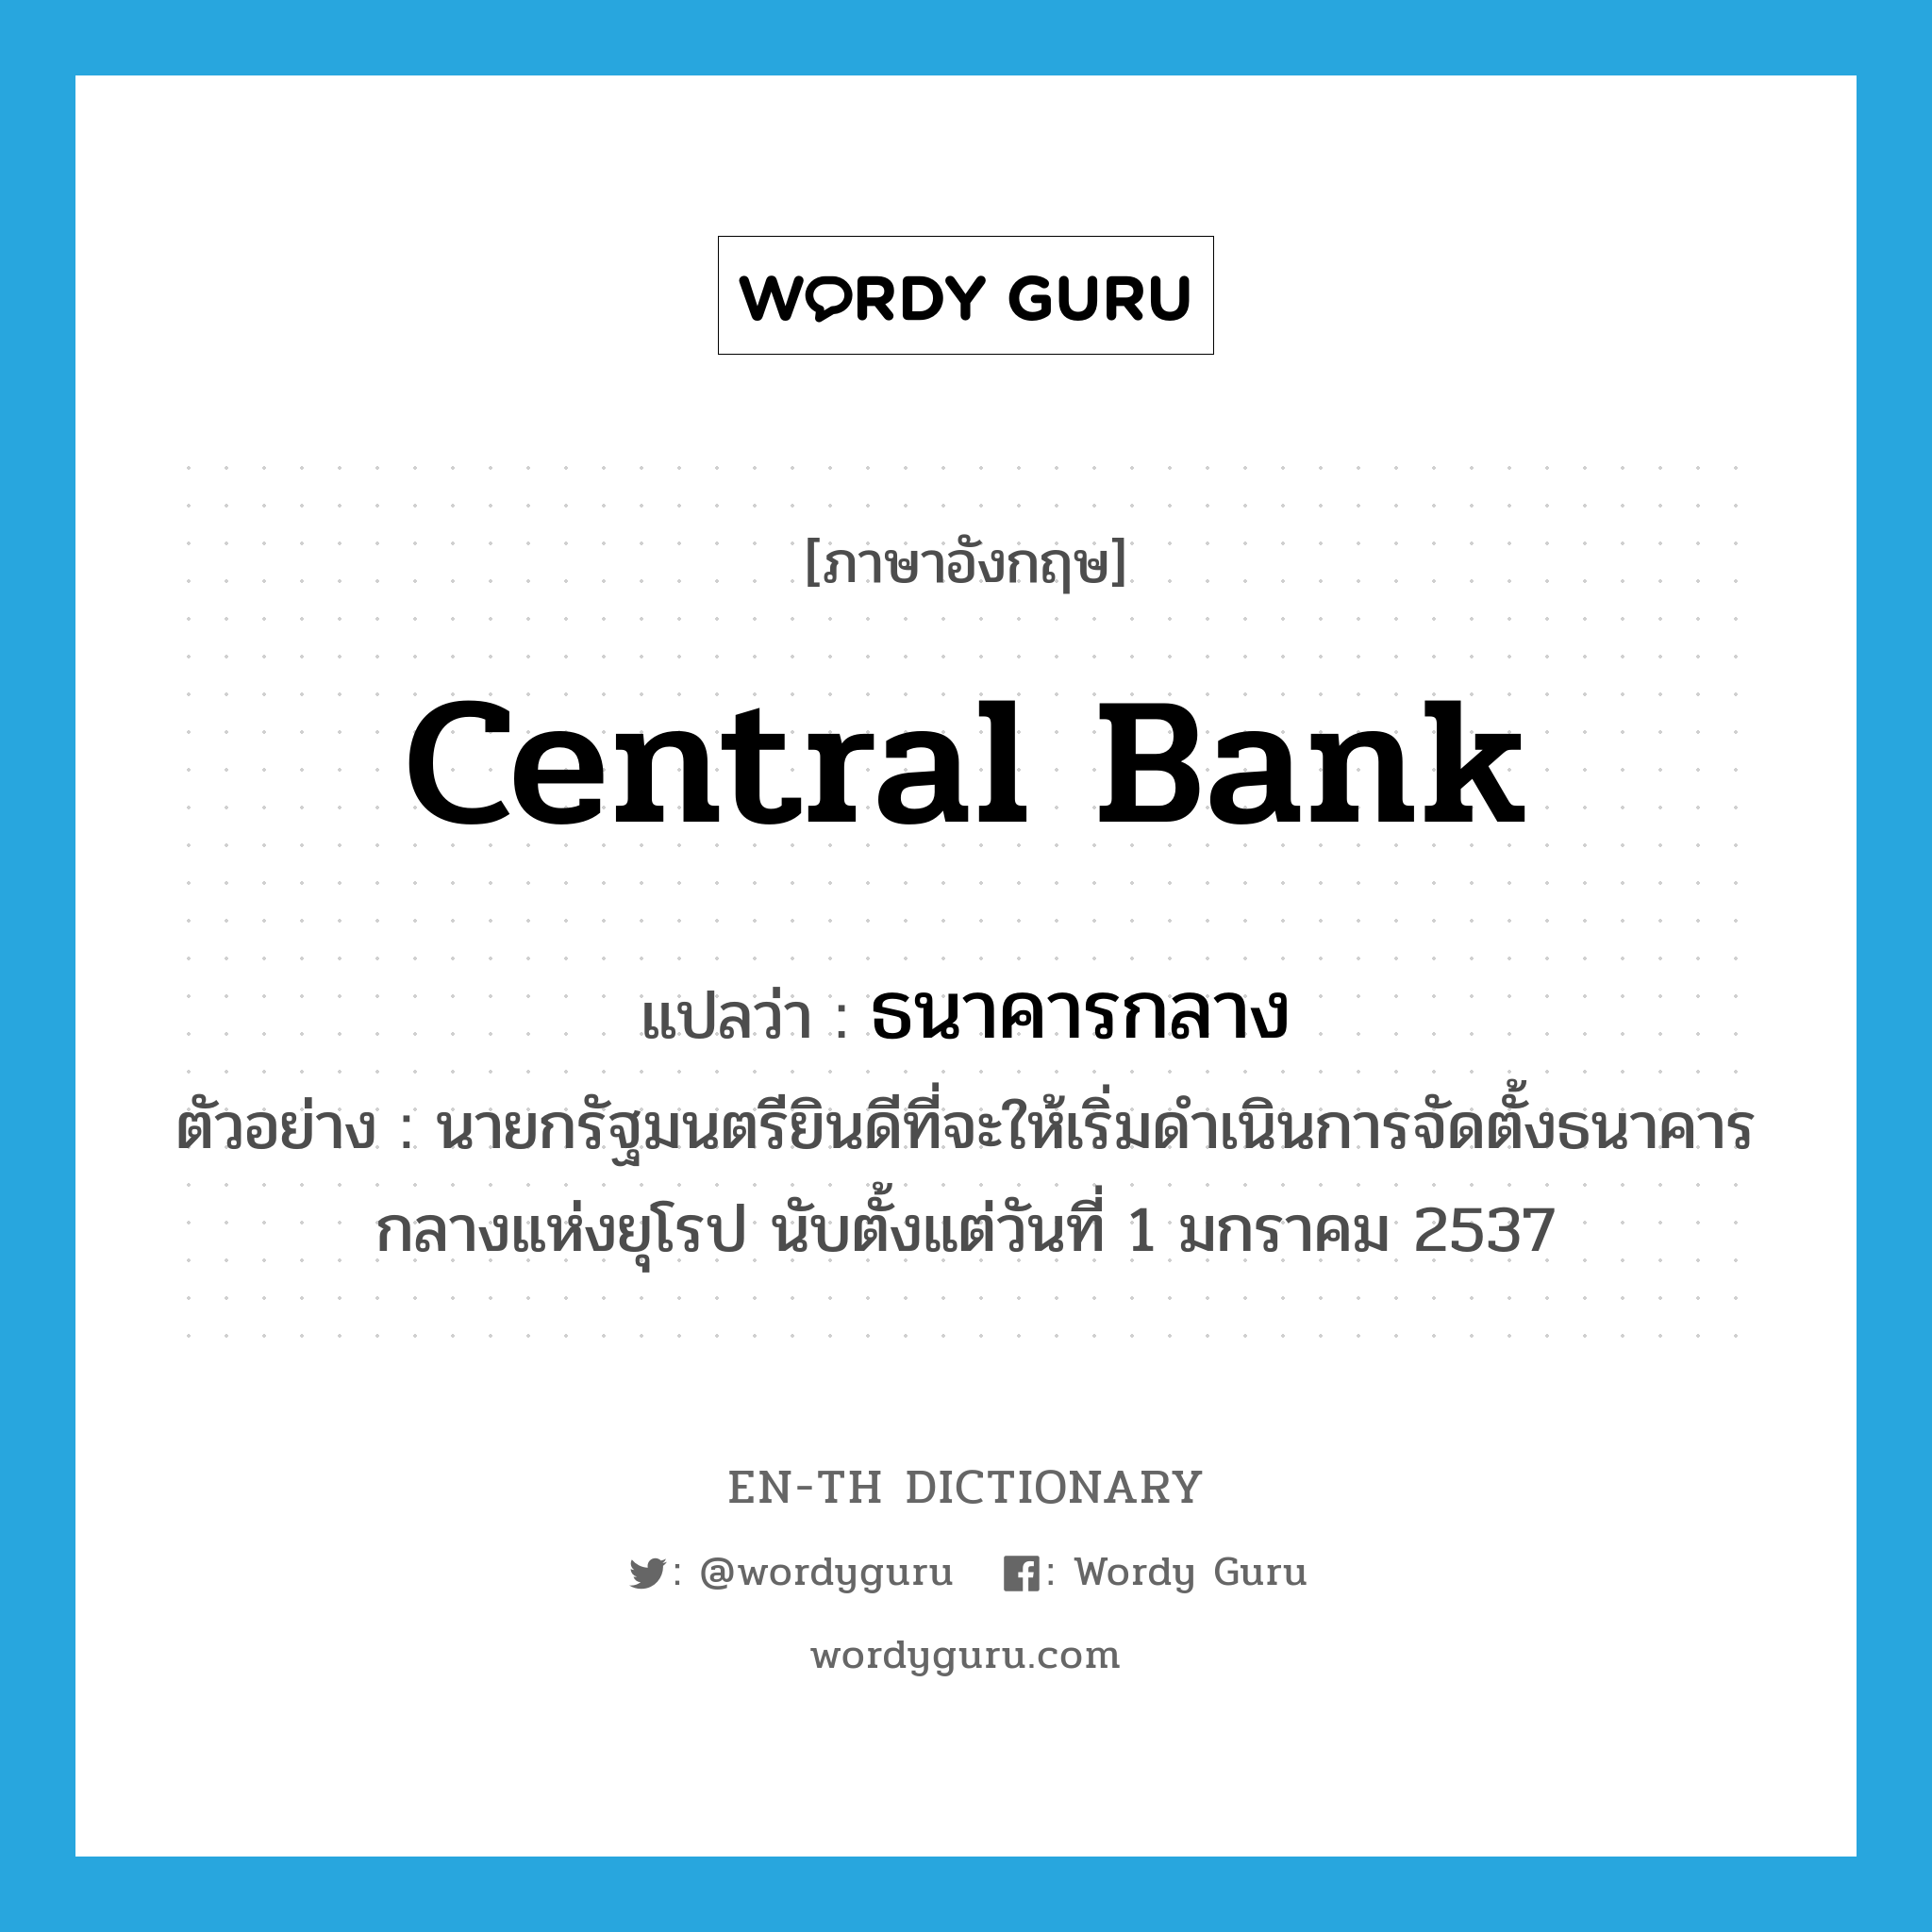 central bank แปลว่า?, คำศัพท์ภาษาอังกฤษ central bank แปลว่า ธนาคารกลาง ประเภท N ตัวอย่าง นายกรัฐมนตรียินดีที่จะให้เริ่มดำเนินการจัดตั้งธนาคารกลางแห่งยุโรป นับตั้งแต่วันที่ 1 มกราคม 2537 หมวด N